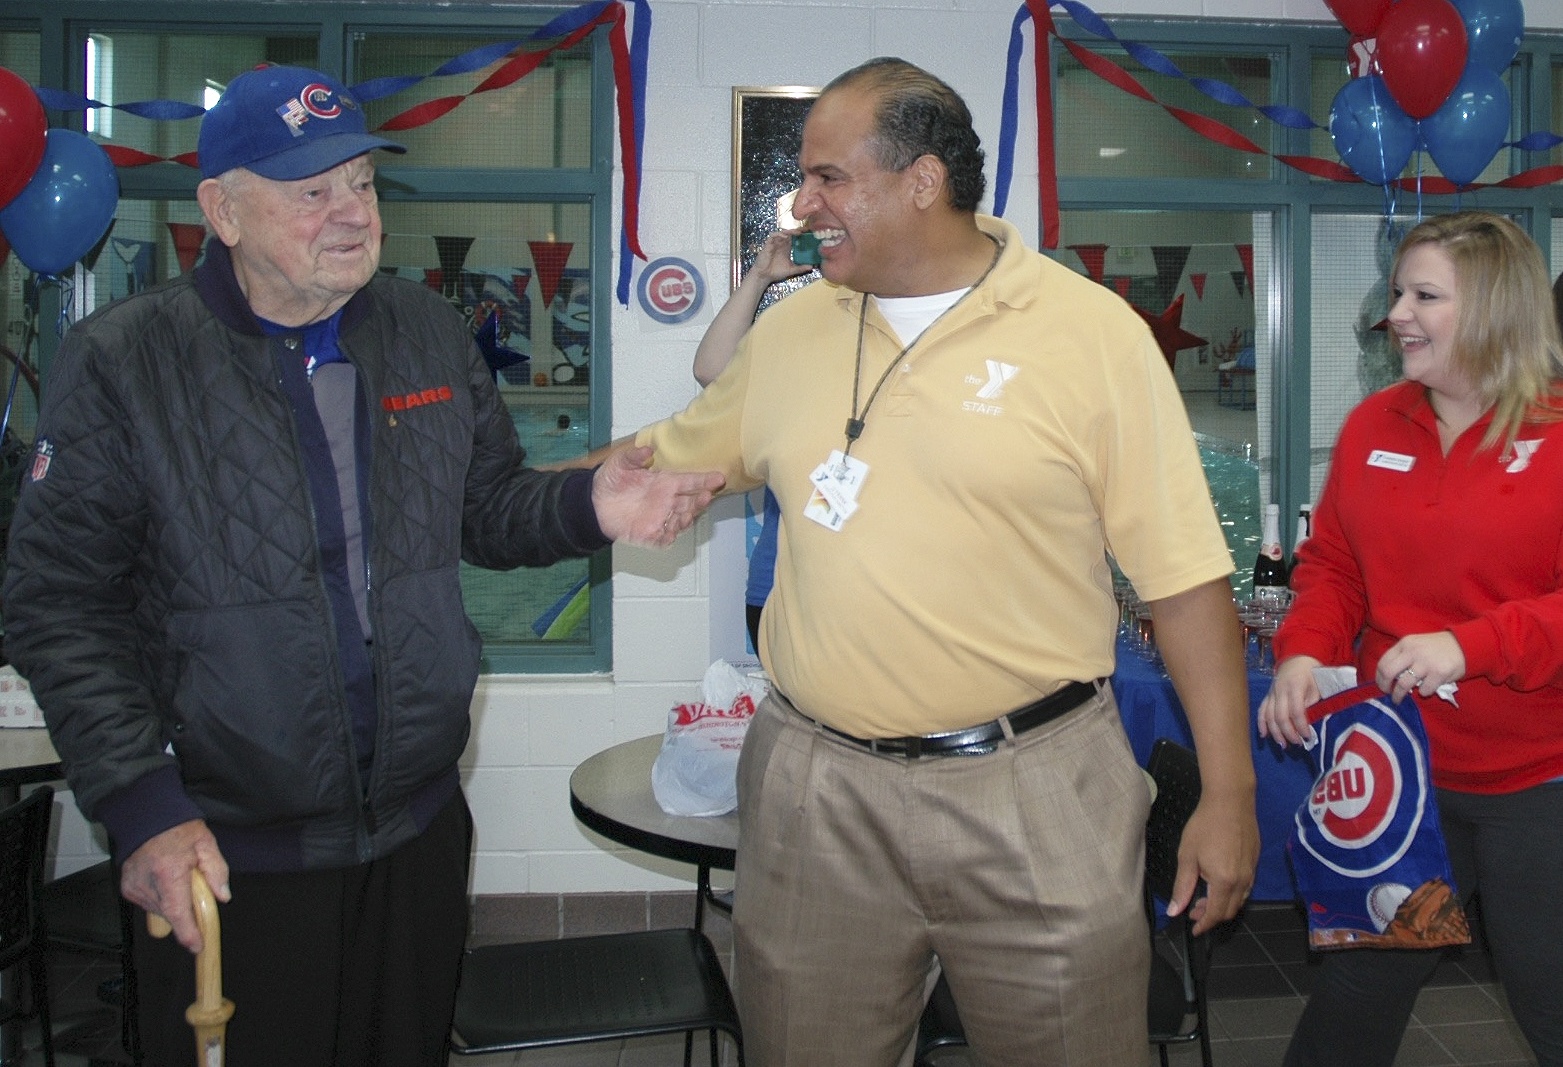 Marysville 93-year-old Cubs fan revels in World Series win